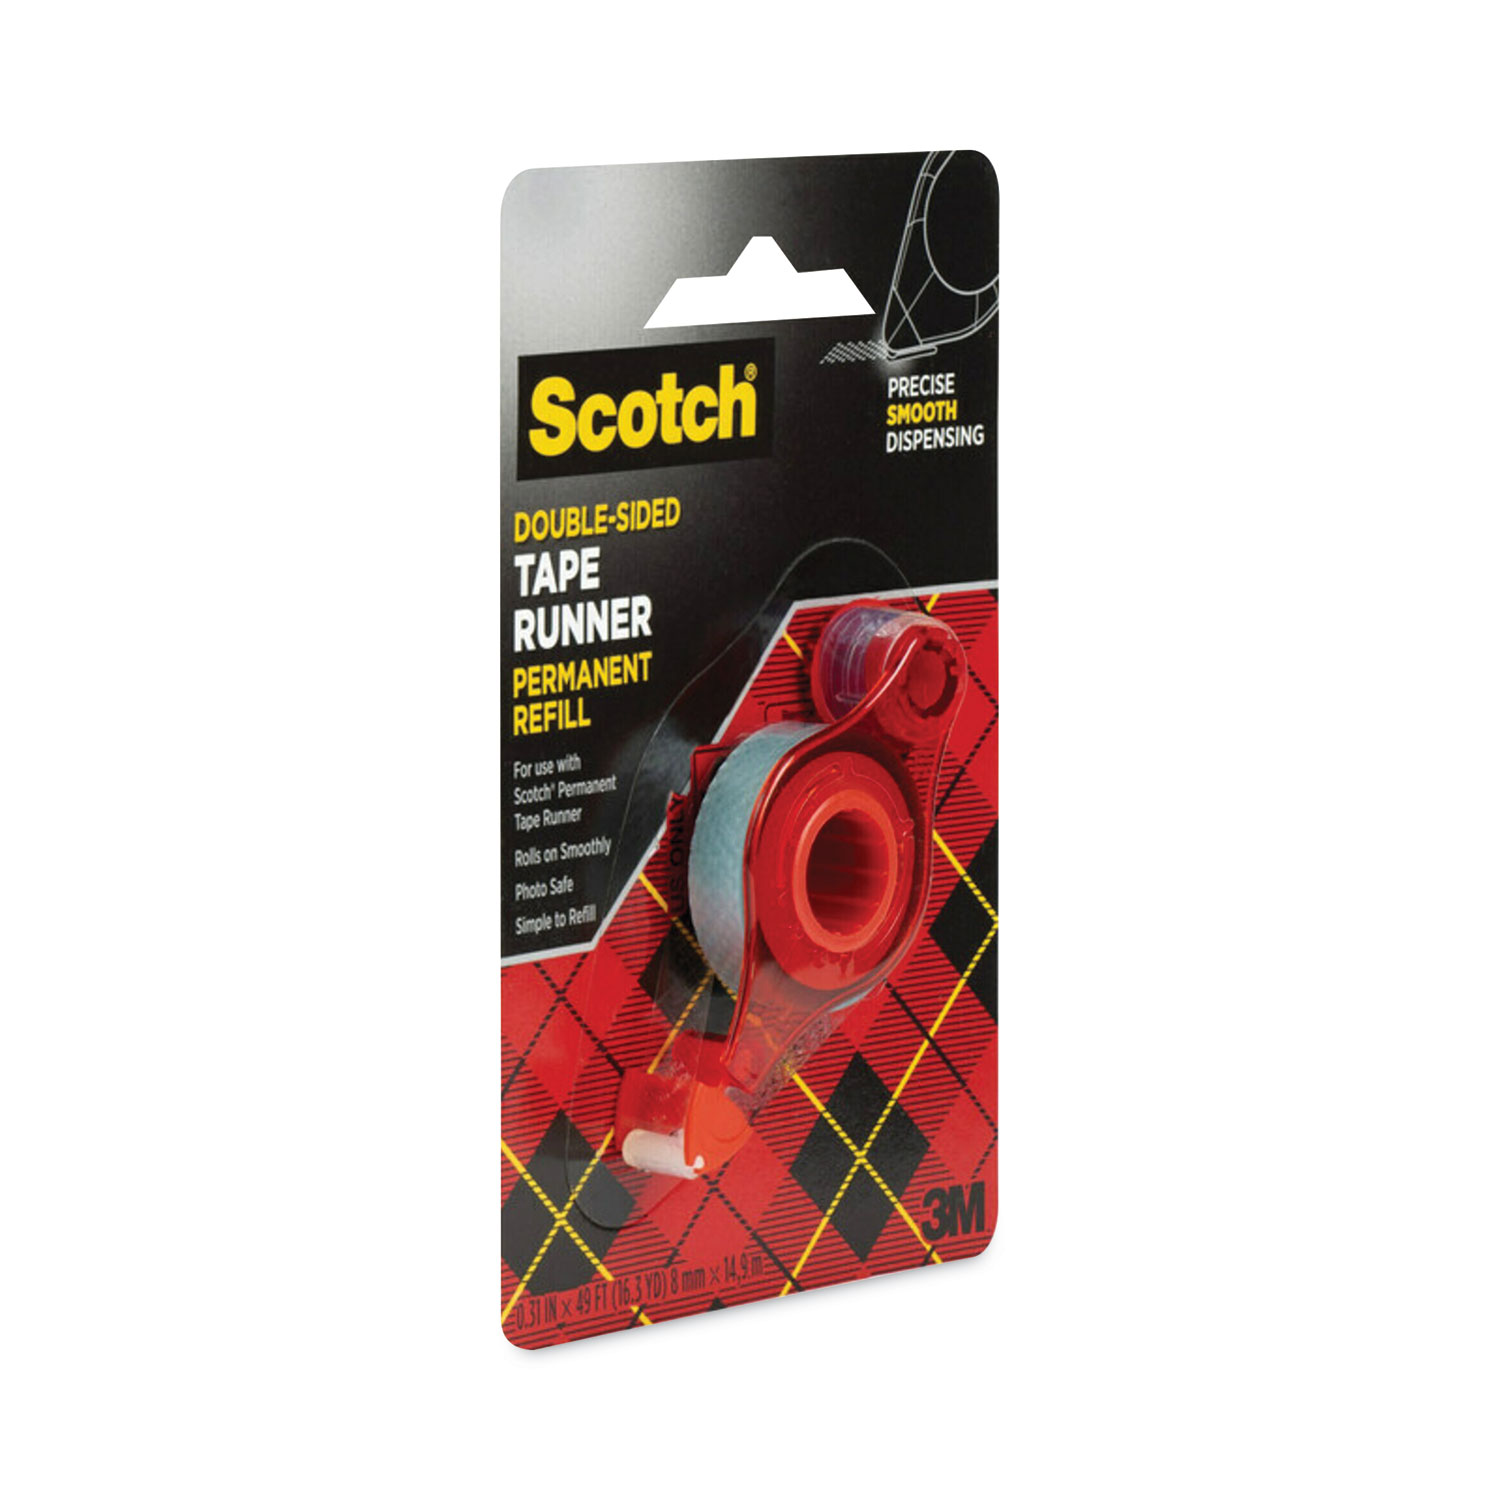 Refill for the Redesigned Scotch 6055 Tape Runner Dispenser, 0.31